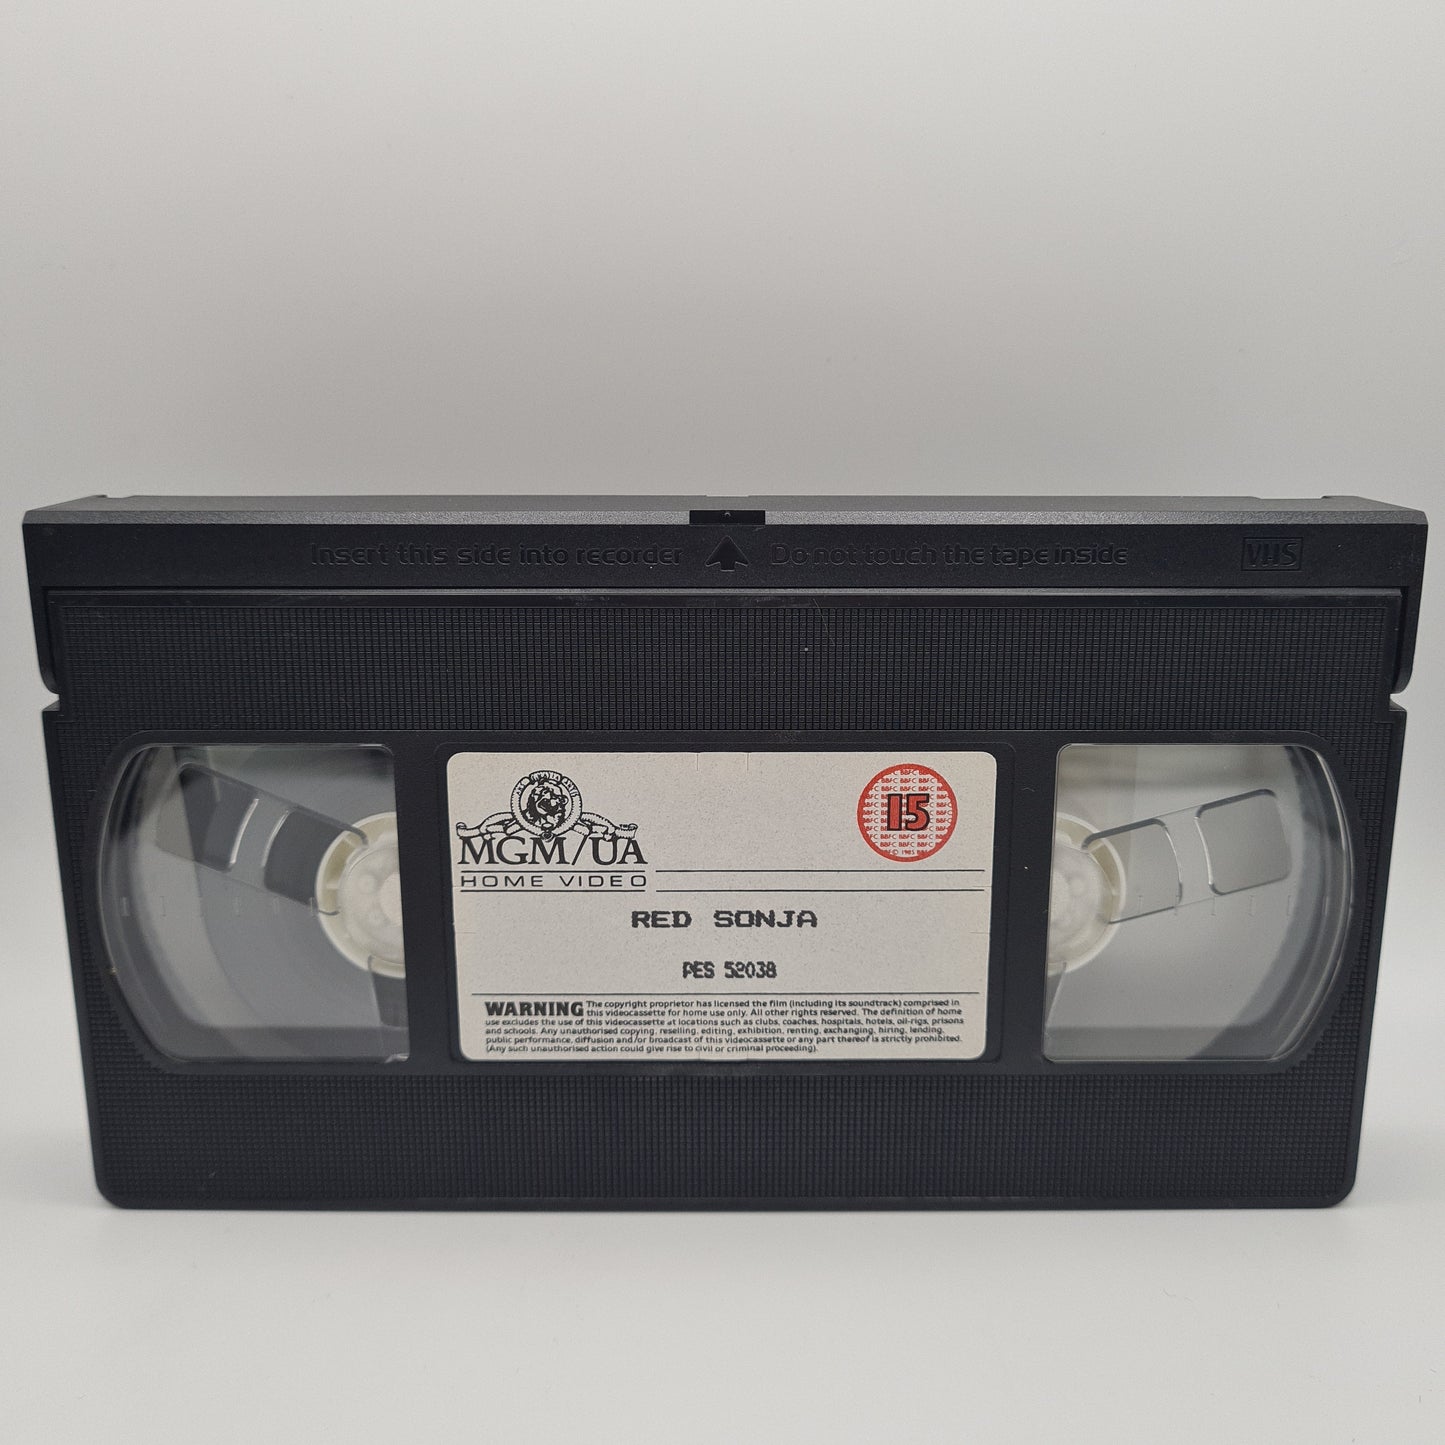 Red Sonja VHS